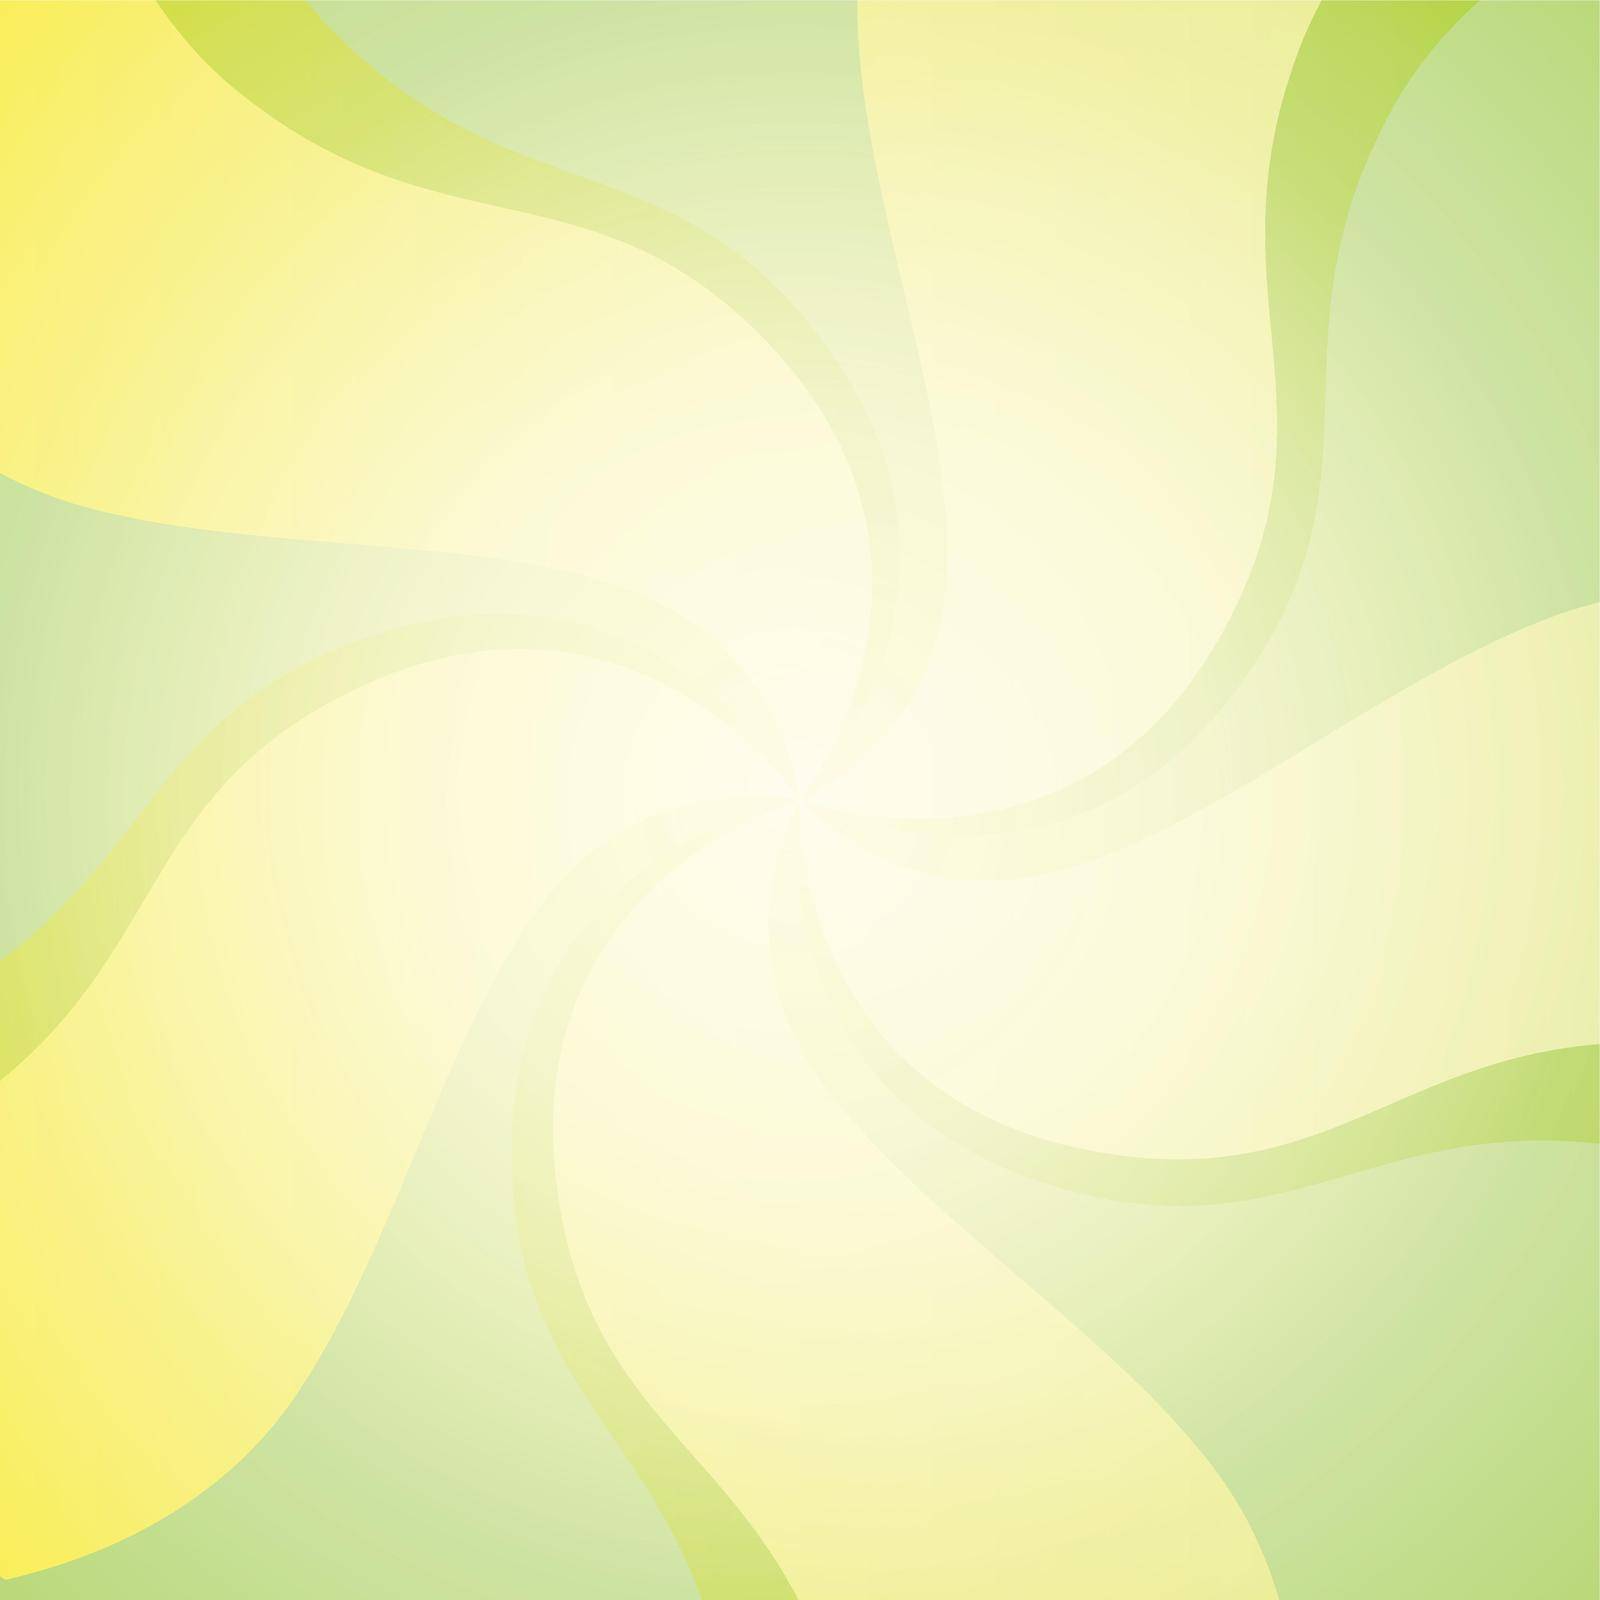 Green Vector swirling backdrop by macroarting